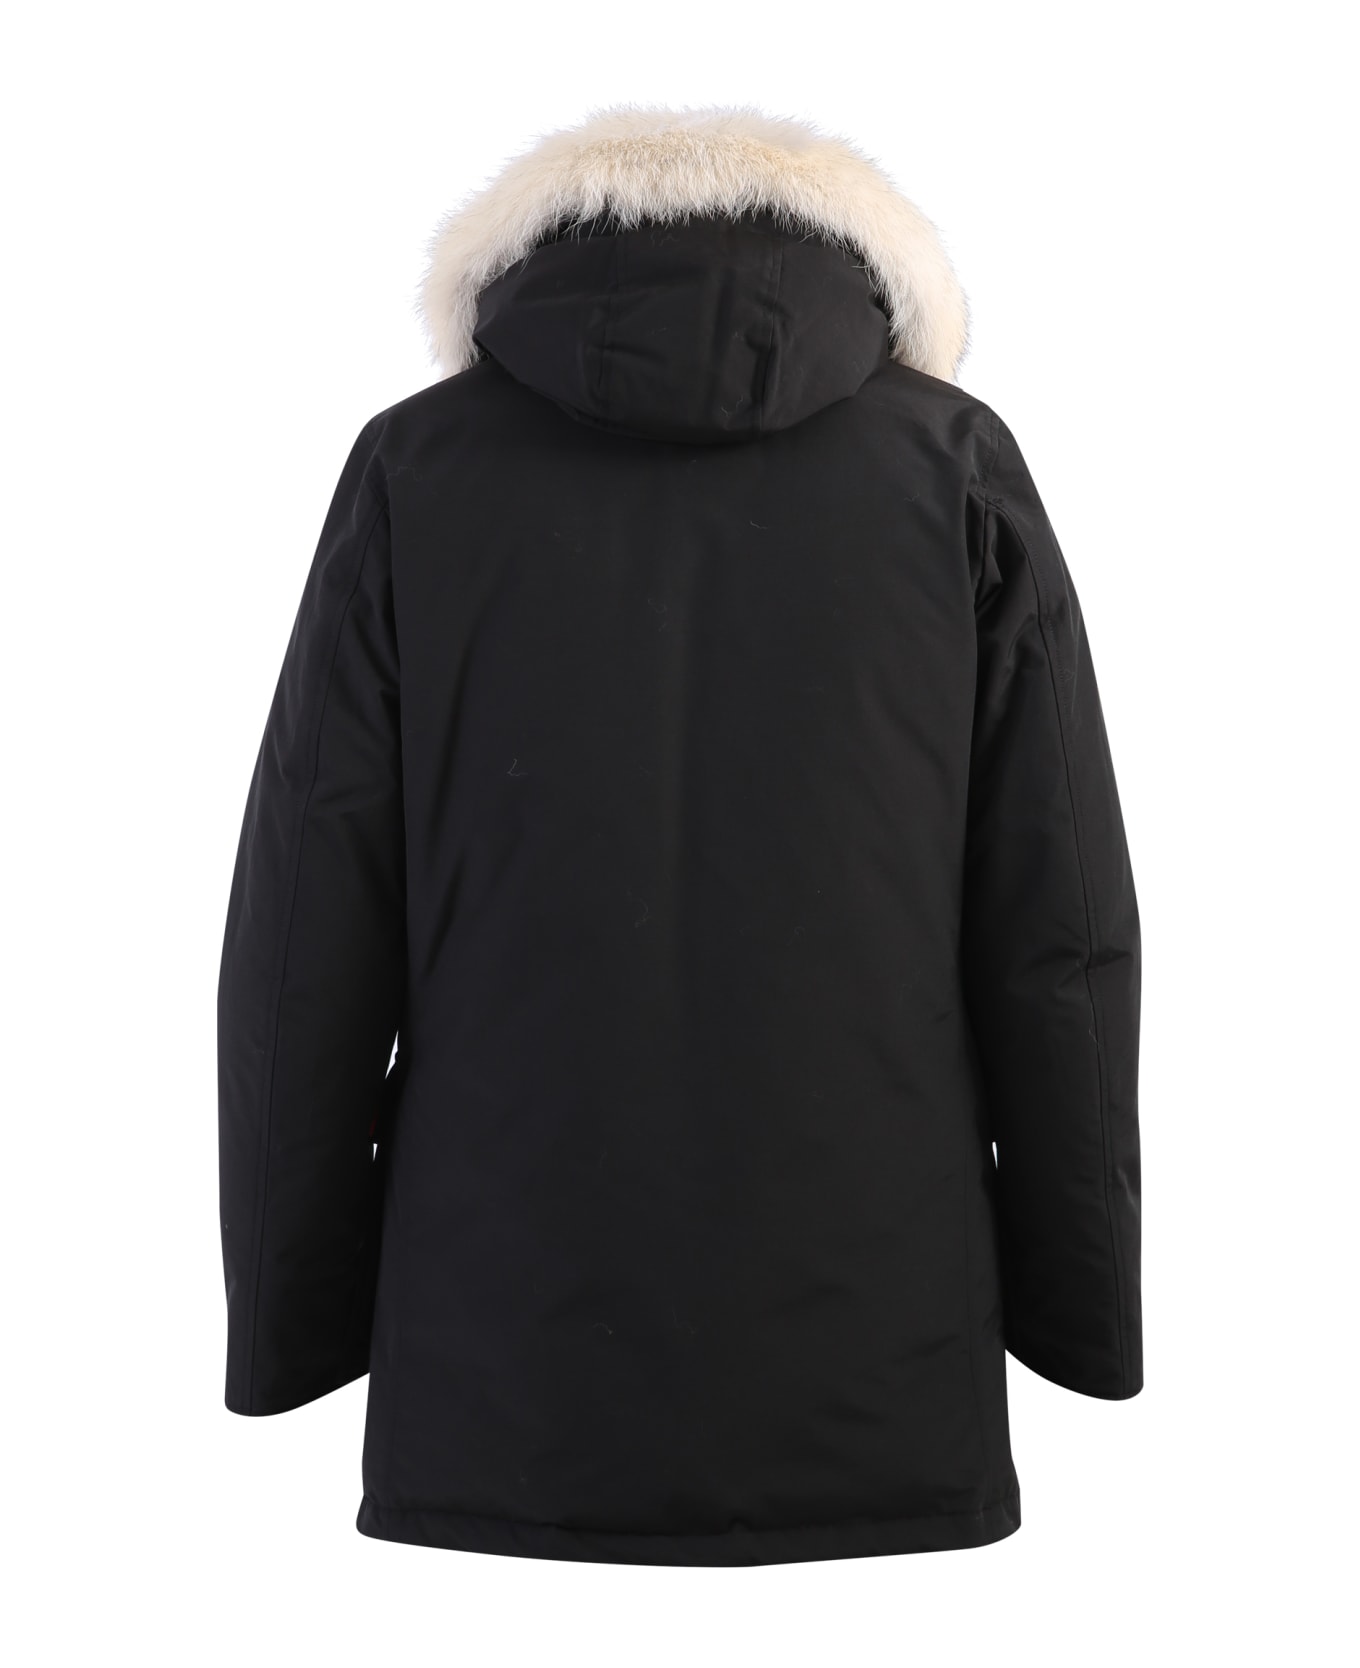 Woolrich Artic Parka Coat - Black